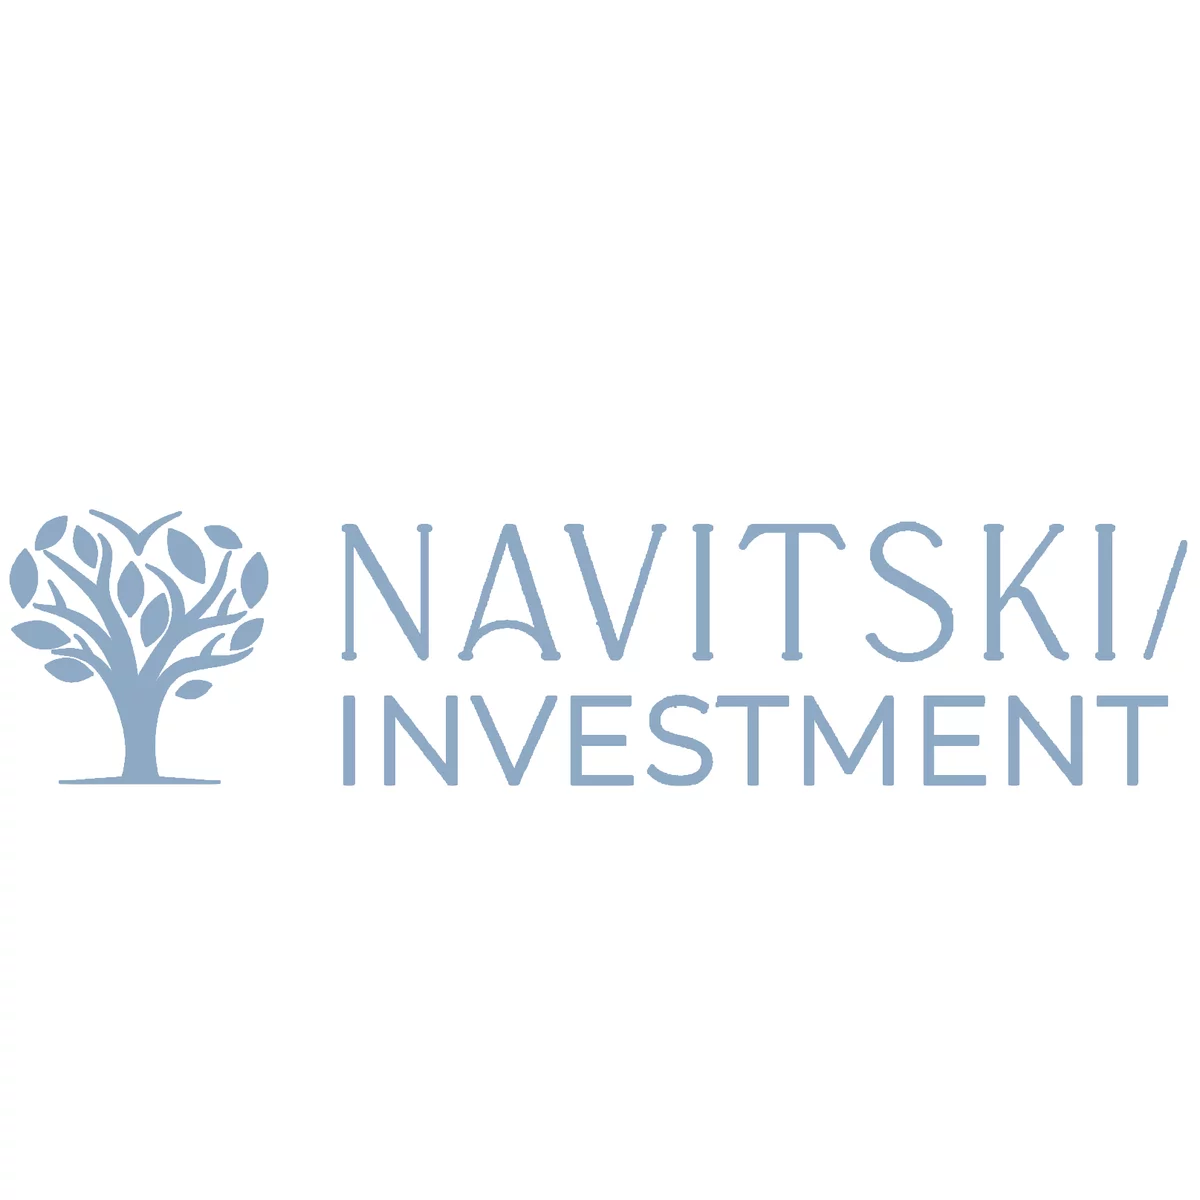 Navitski Investment LTD